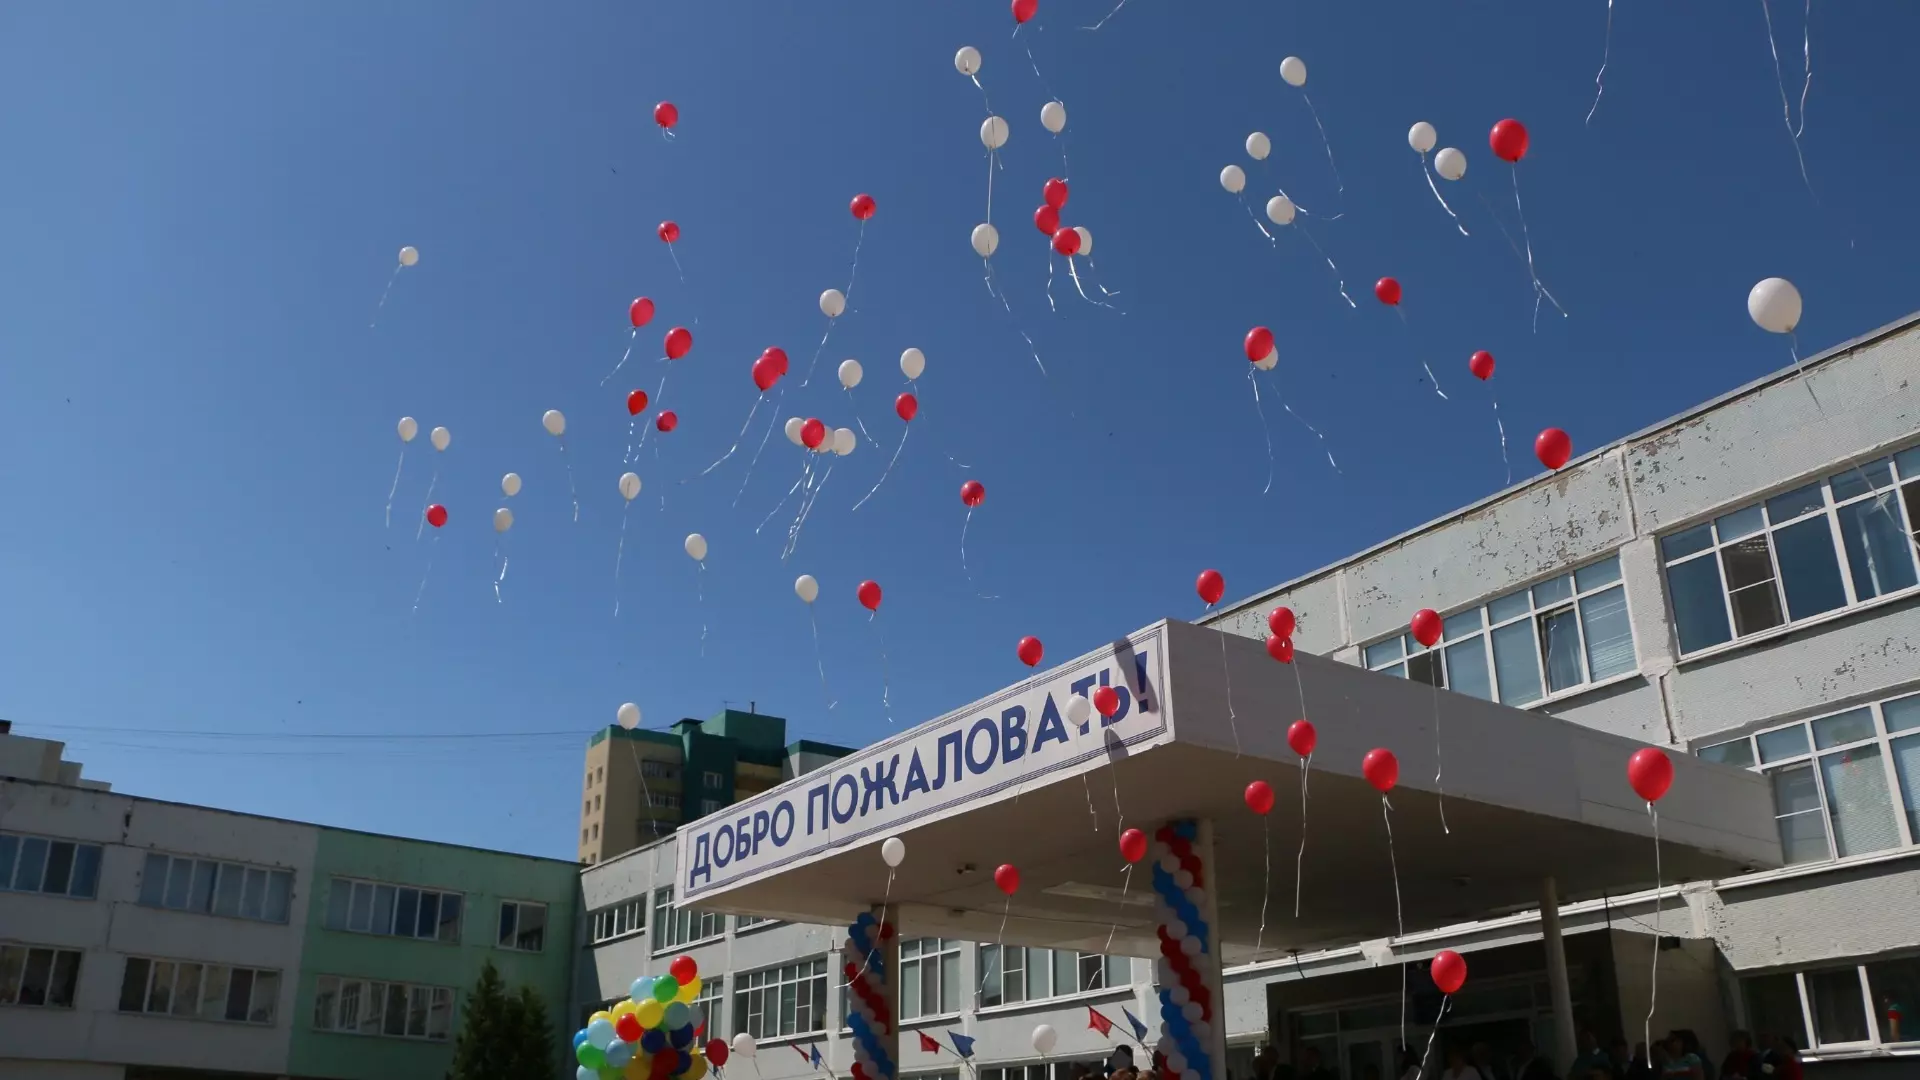 Волгоградских выпускников просят отказаться от запуска гелиевых шаров